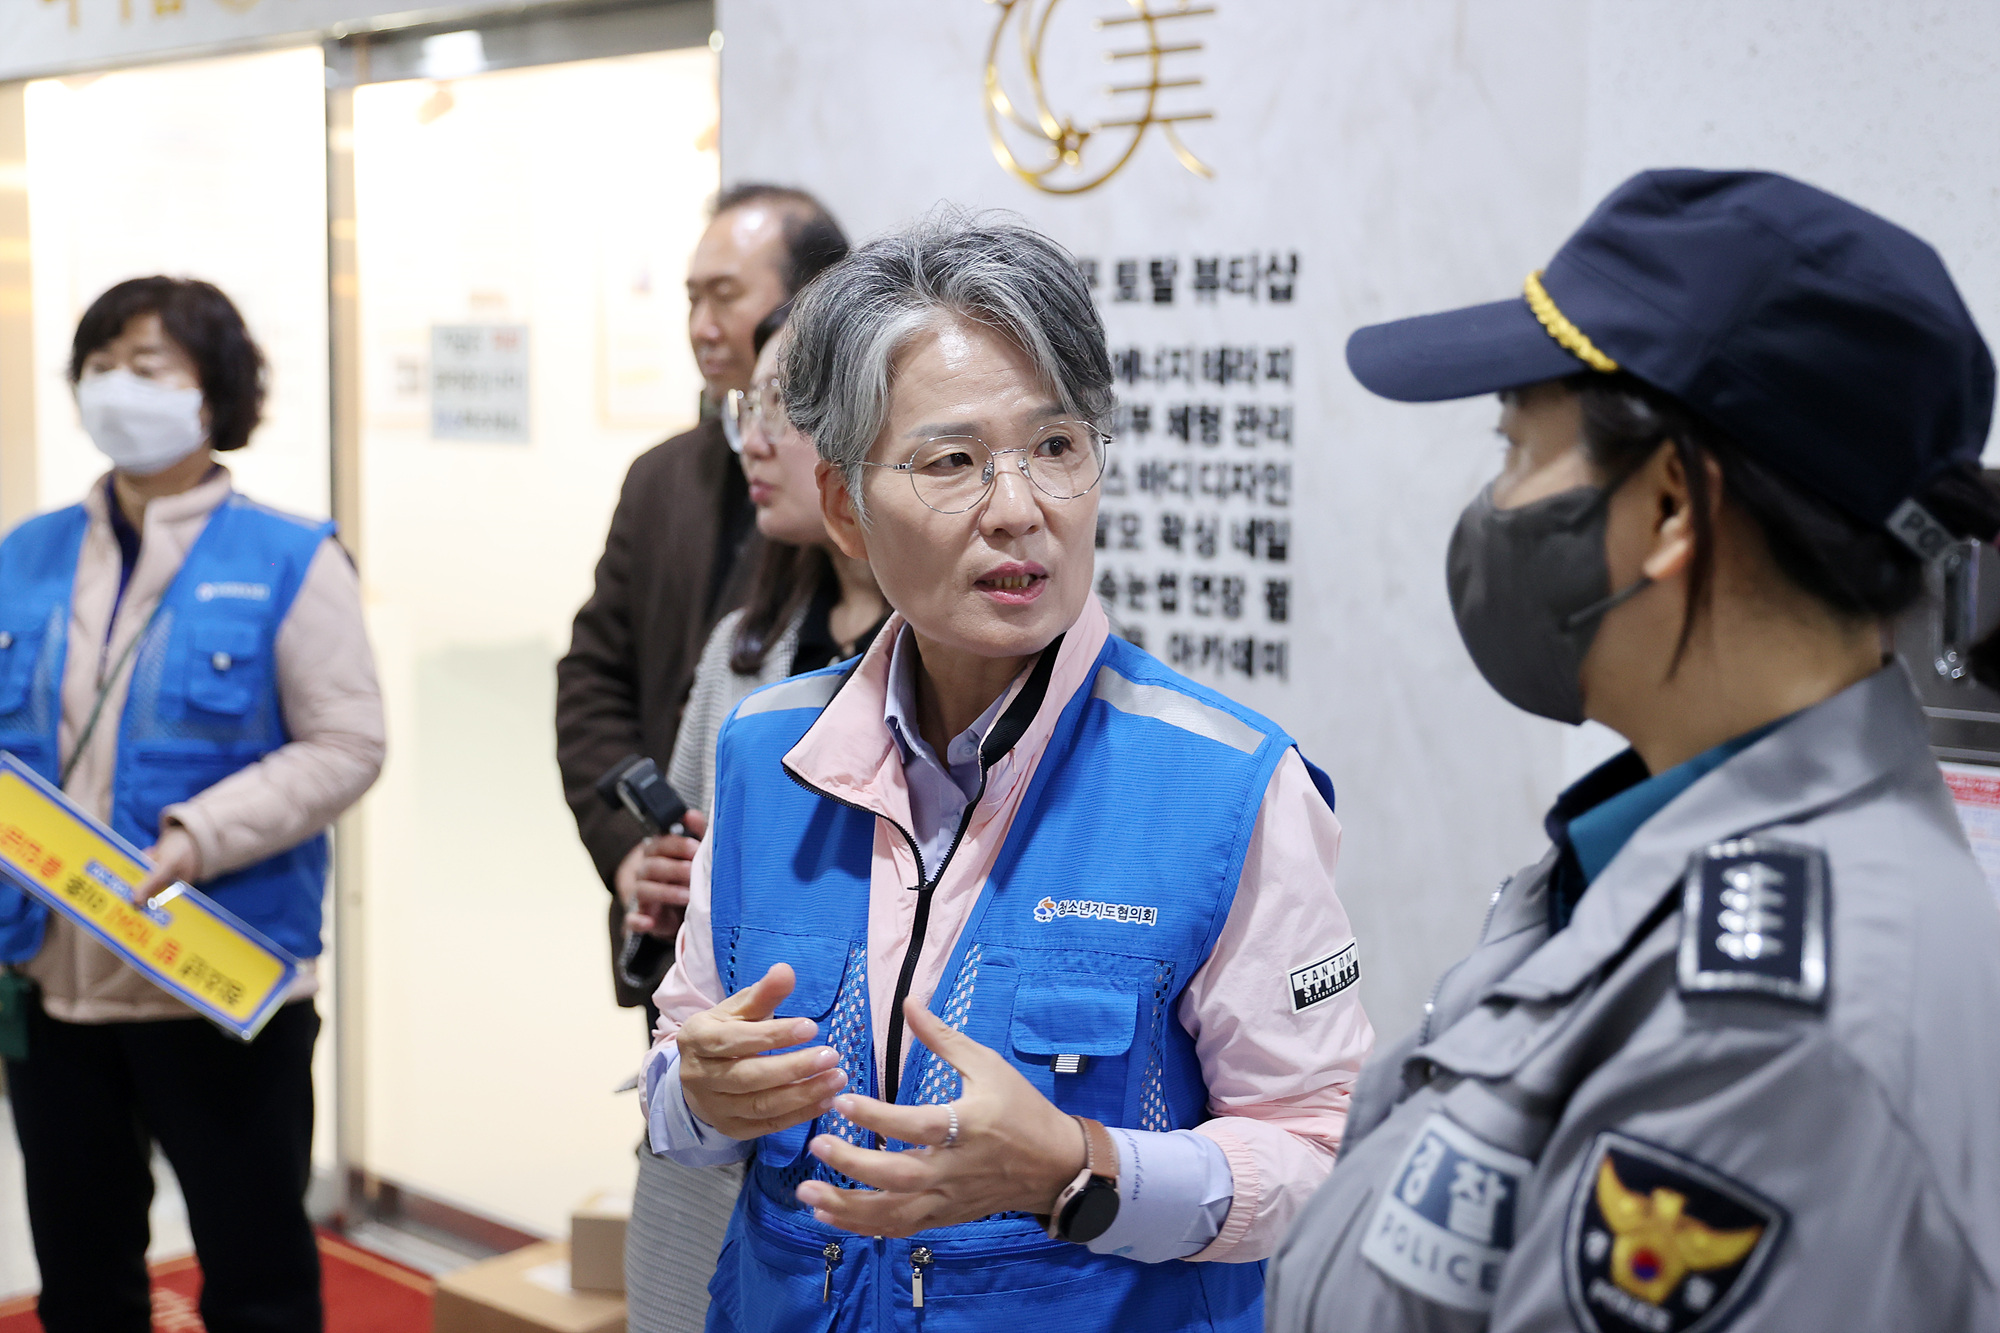 시흥시의회, 청소년유해환경 합동점검 참여